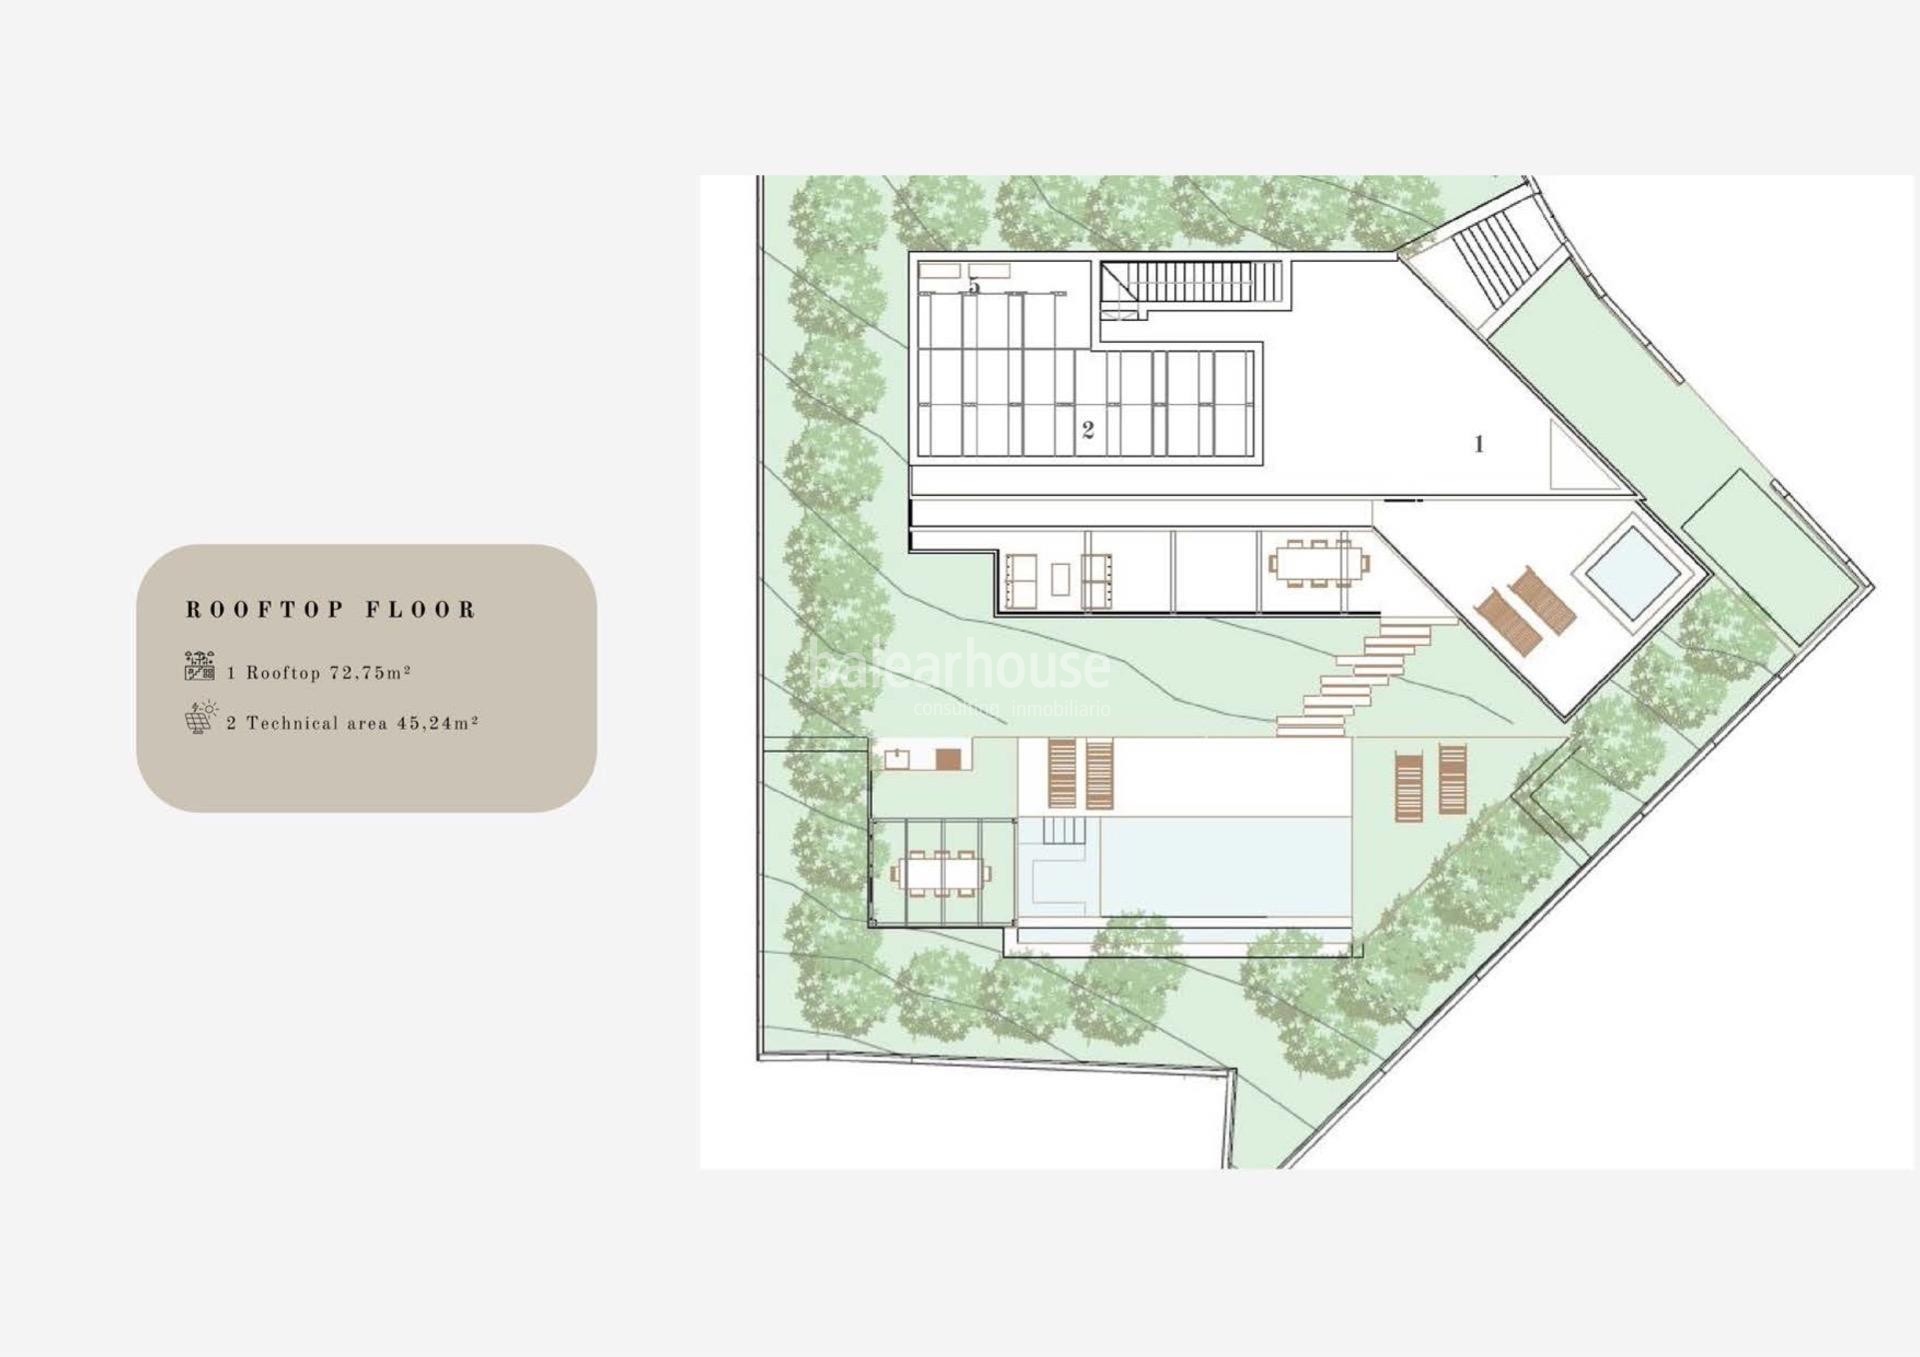 Magnífico proyecto de villa con un cuidado diseño moderno y una ubicación privilegiada en Bendinat